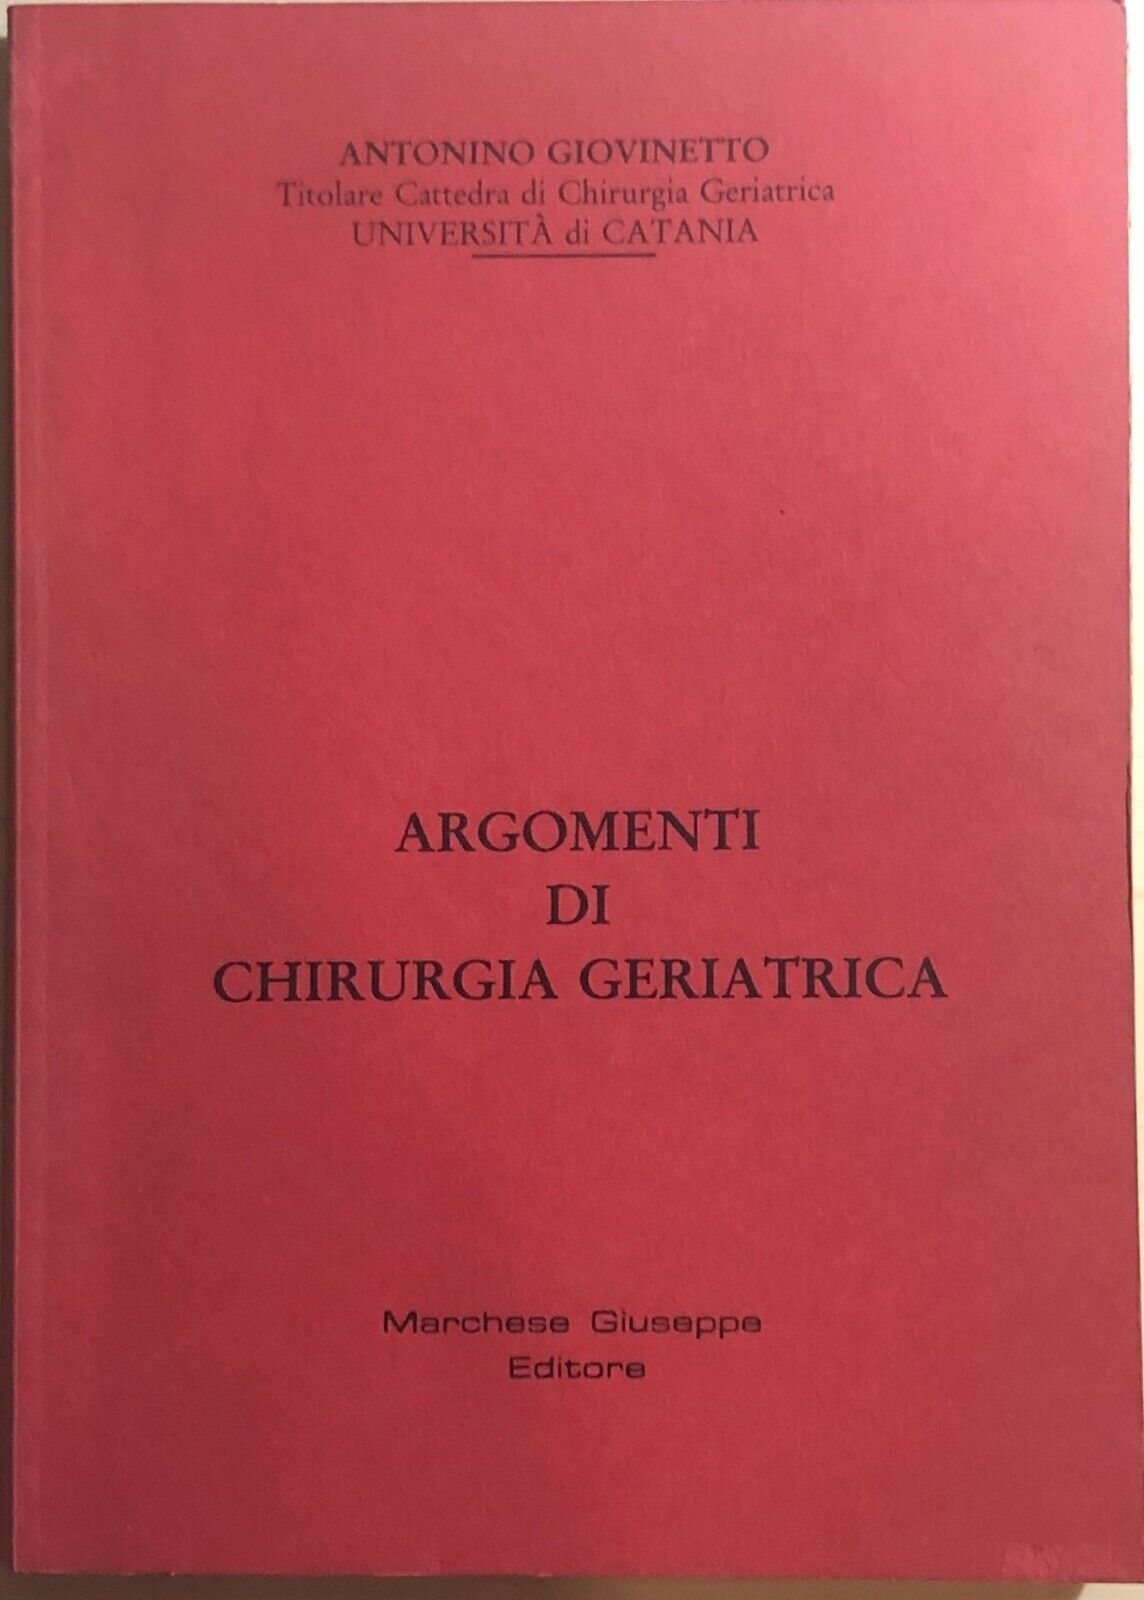 Argomenti di chirurgia geriatrica di Antonino Giovinetto, 1989, Marchese Giusepp